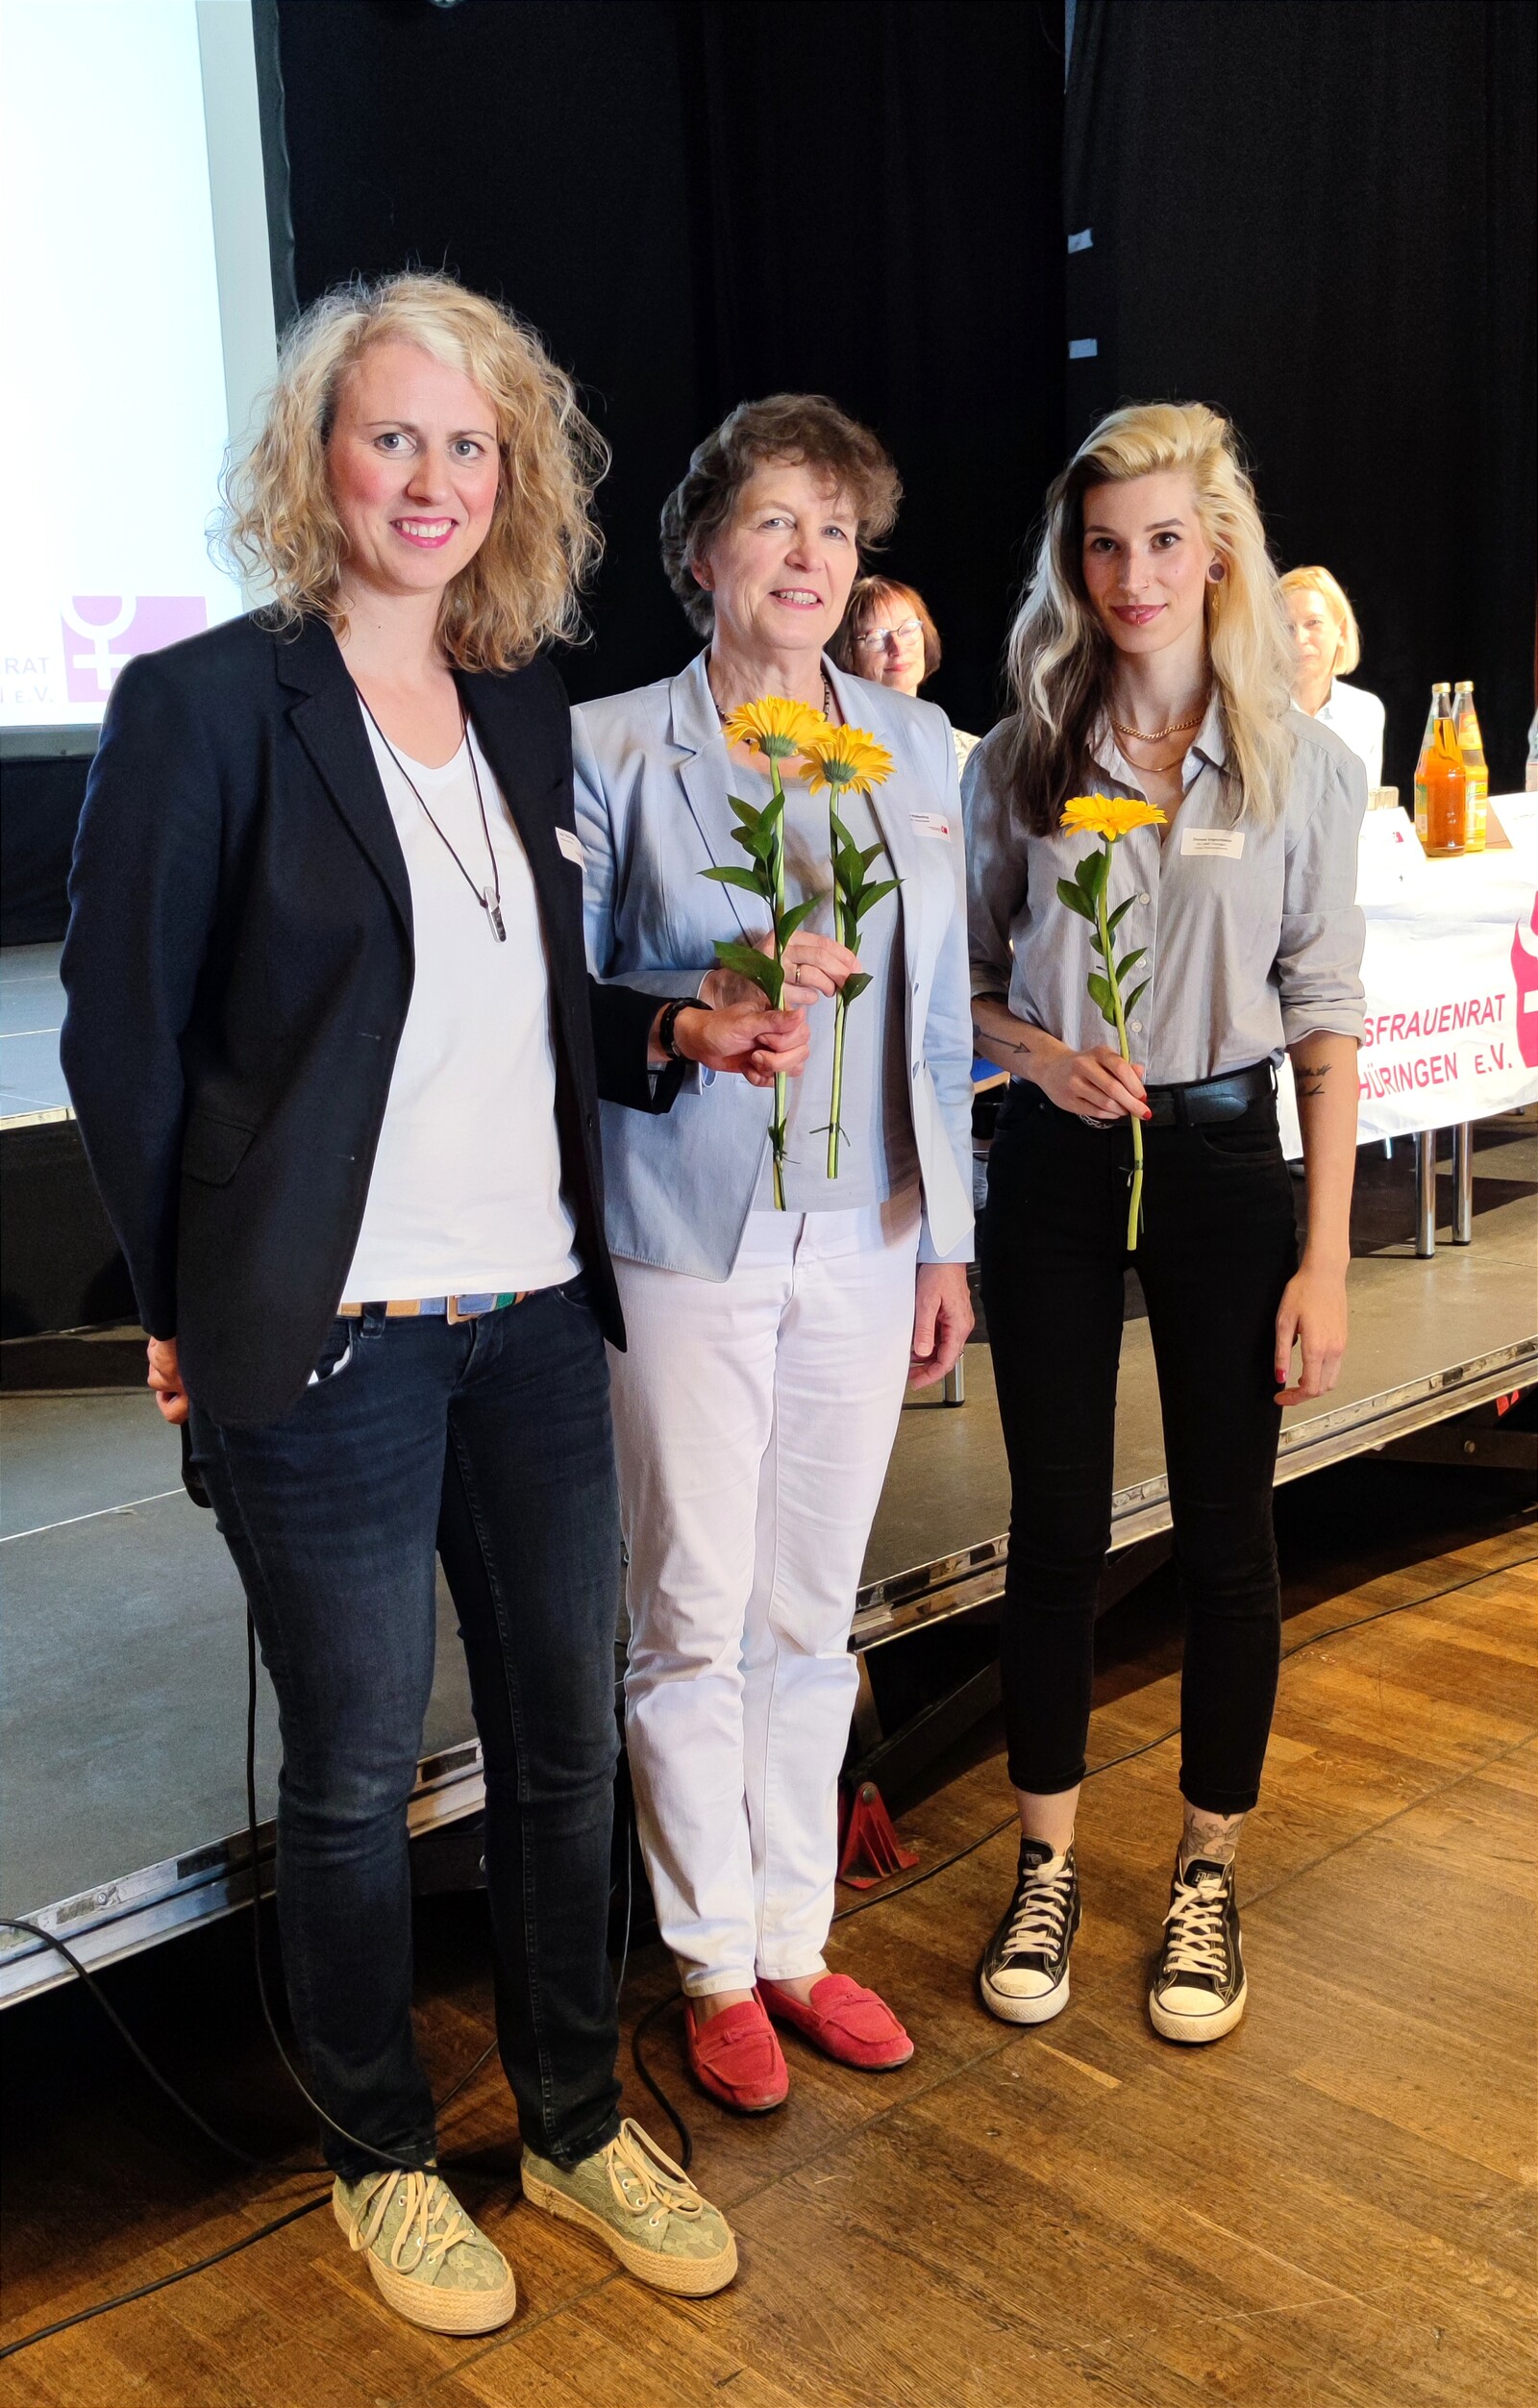 neu gewählter Vorstand des Landesfrauenrats Thüringen: Julia Hohmann (Vorsitzende), Ina Wäßerling (Schatzmeisterin), Donata Vogtschmidt (stellvertretende Vorsitzende), Katja Schröder